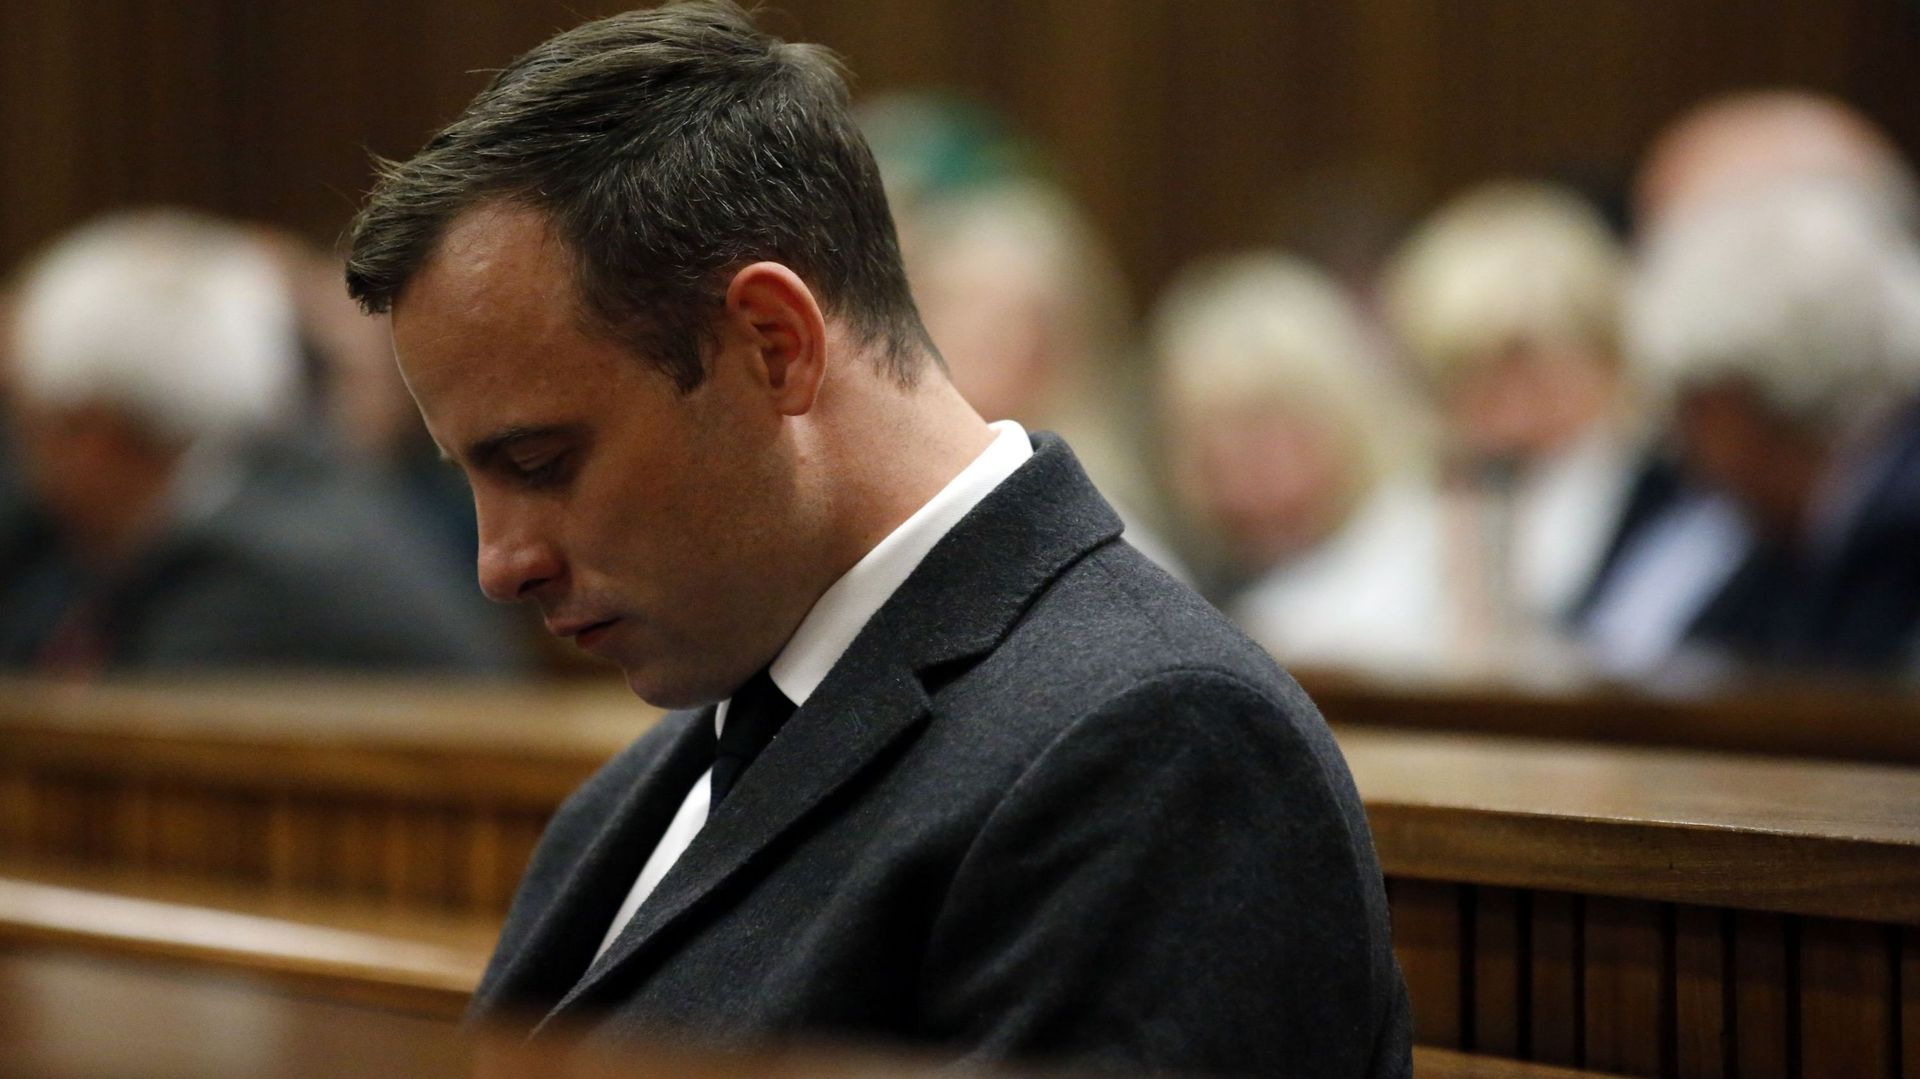 Oscar Pistorius condamné en appel à 13 ans et 5 mois de prison